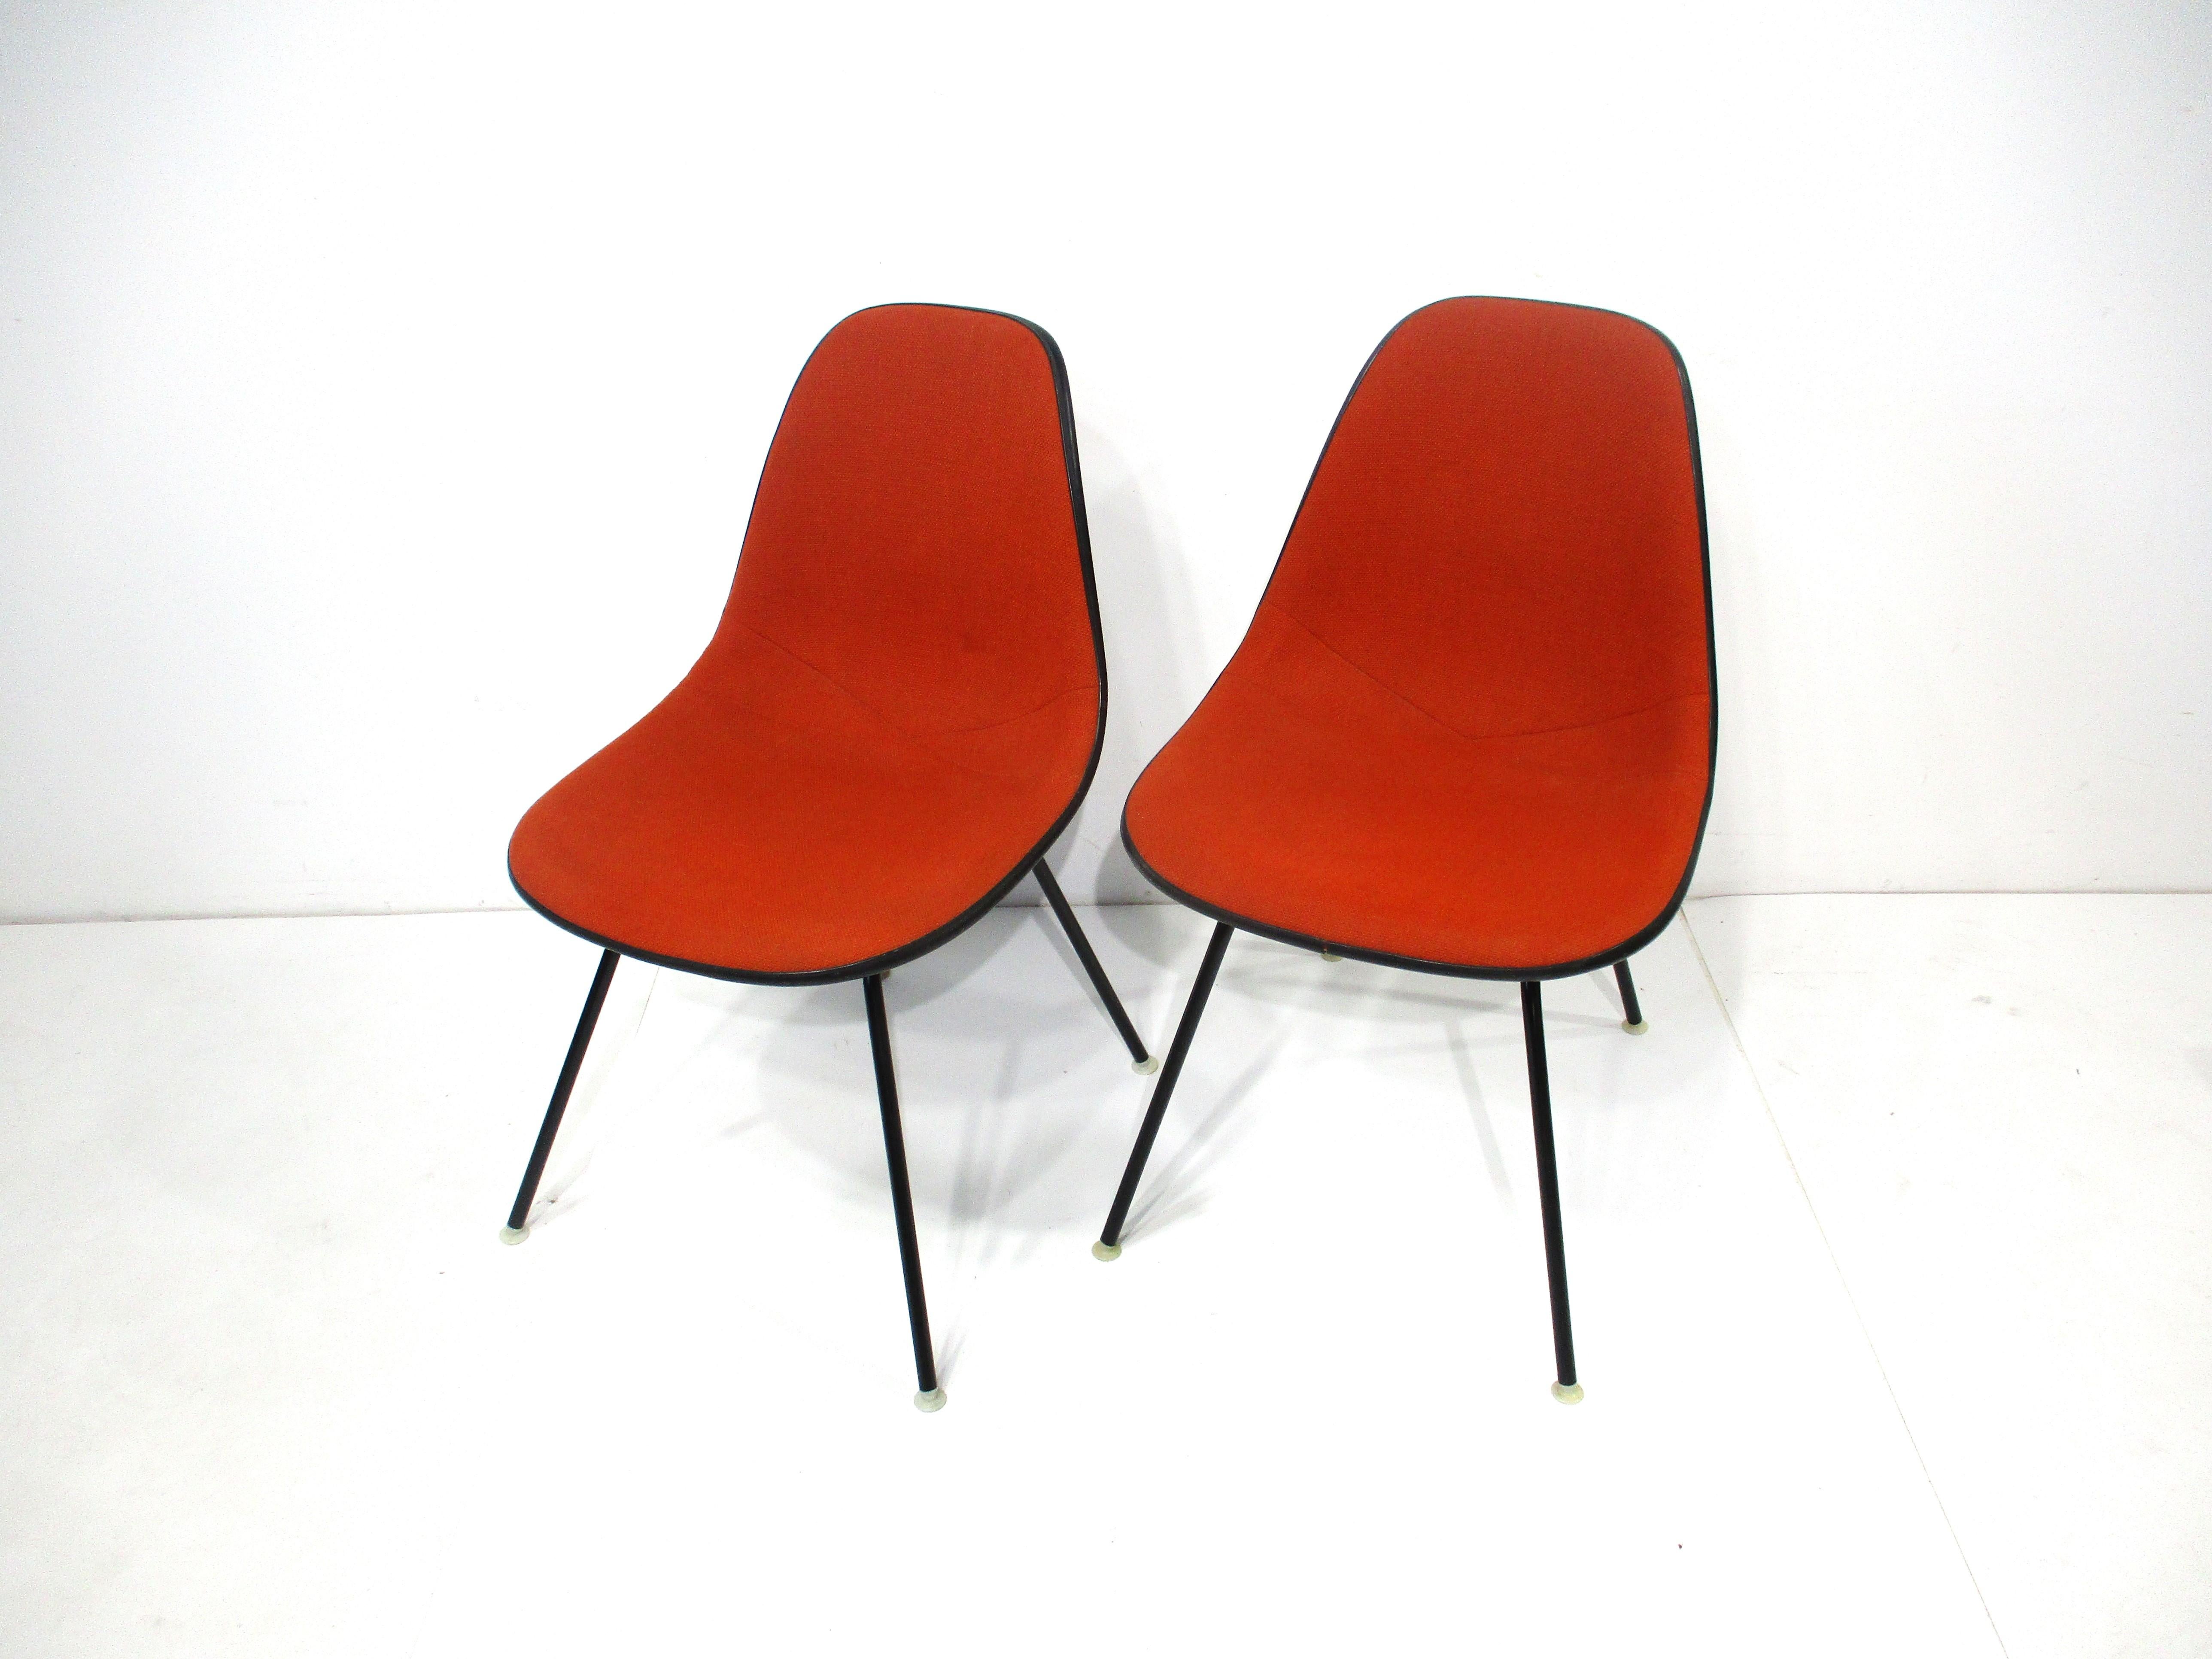 Ein Paar rostfarbene, gepolsterte Beistellstühle mit schwarzen Fiberglasschalen, die auf satinschwarzen H-Sockeln sitzen. Die Basen haben cremefarbene Nylon-Fuß-Pads , um Ihre Böden zu schützen , ein Klassiker von Ray und Charles Eames für die